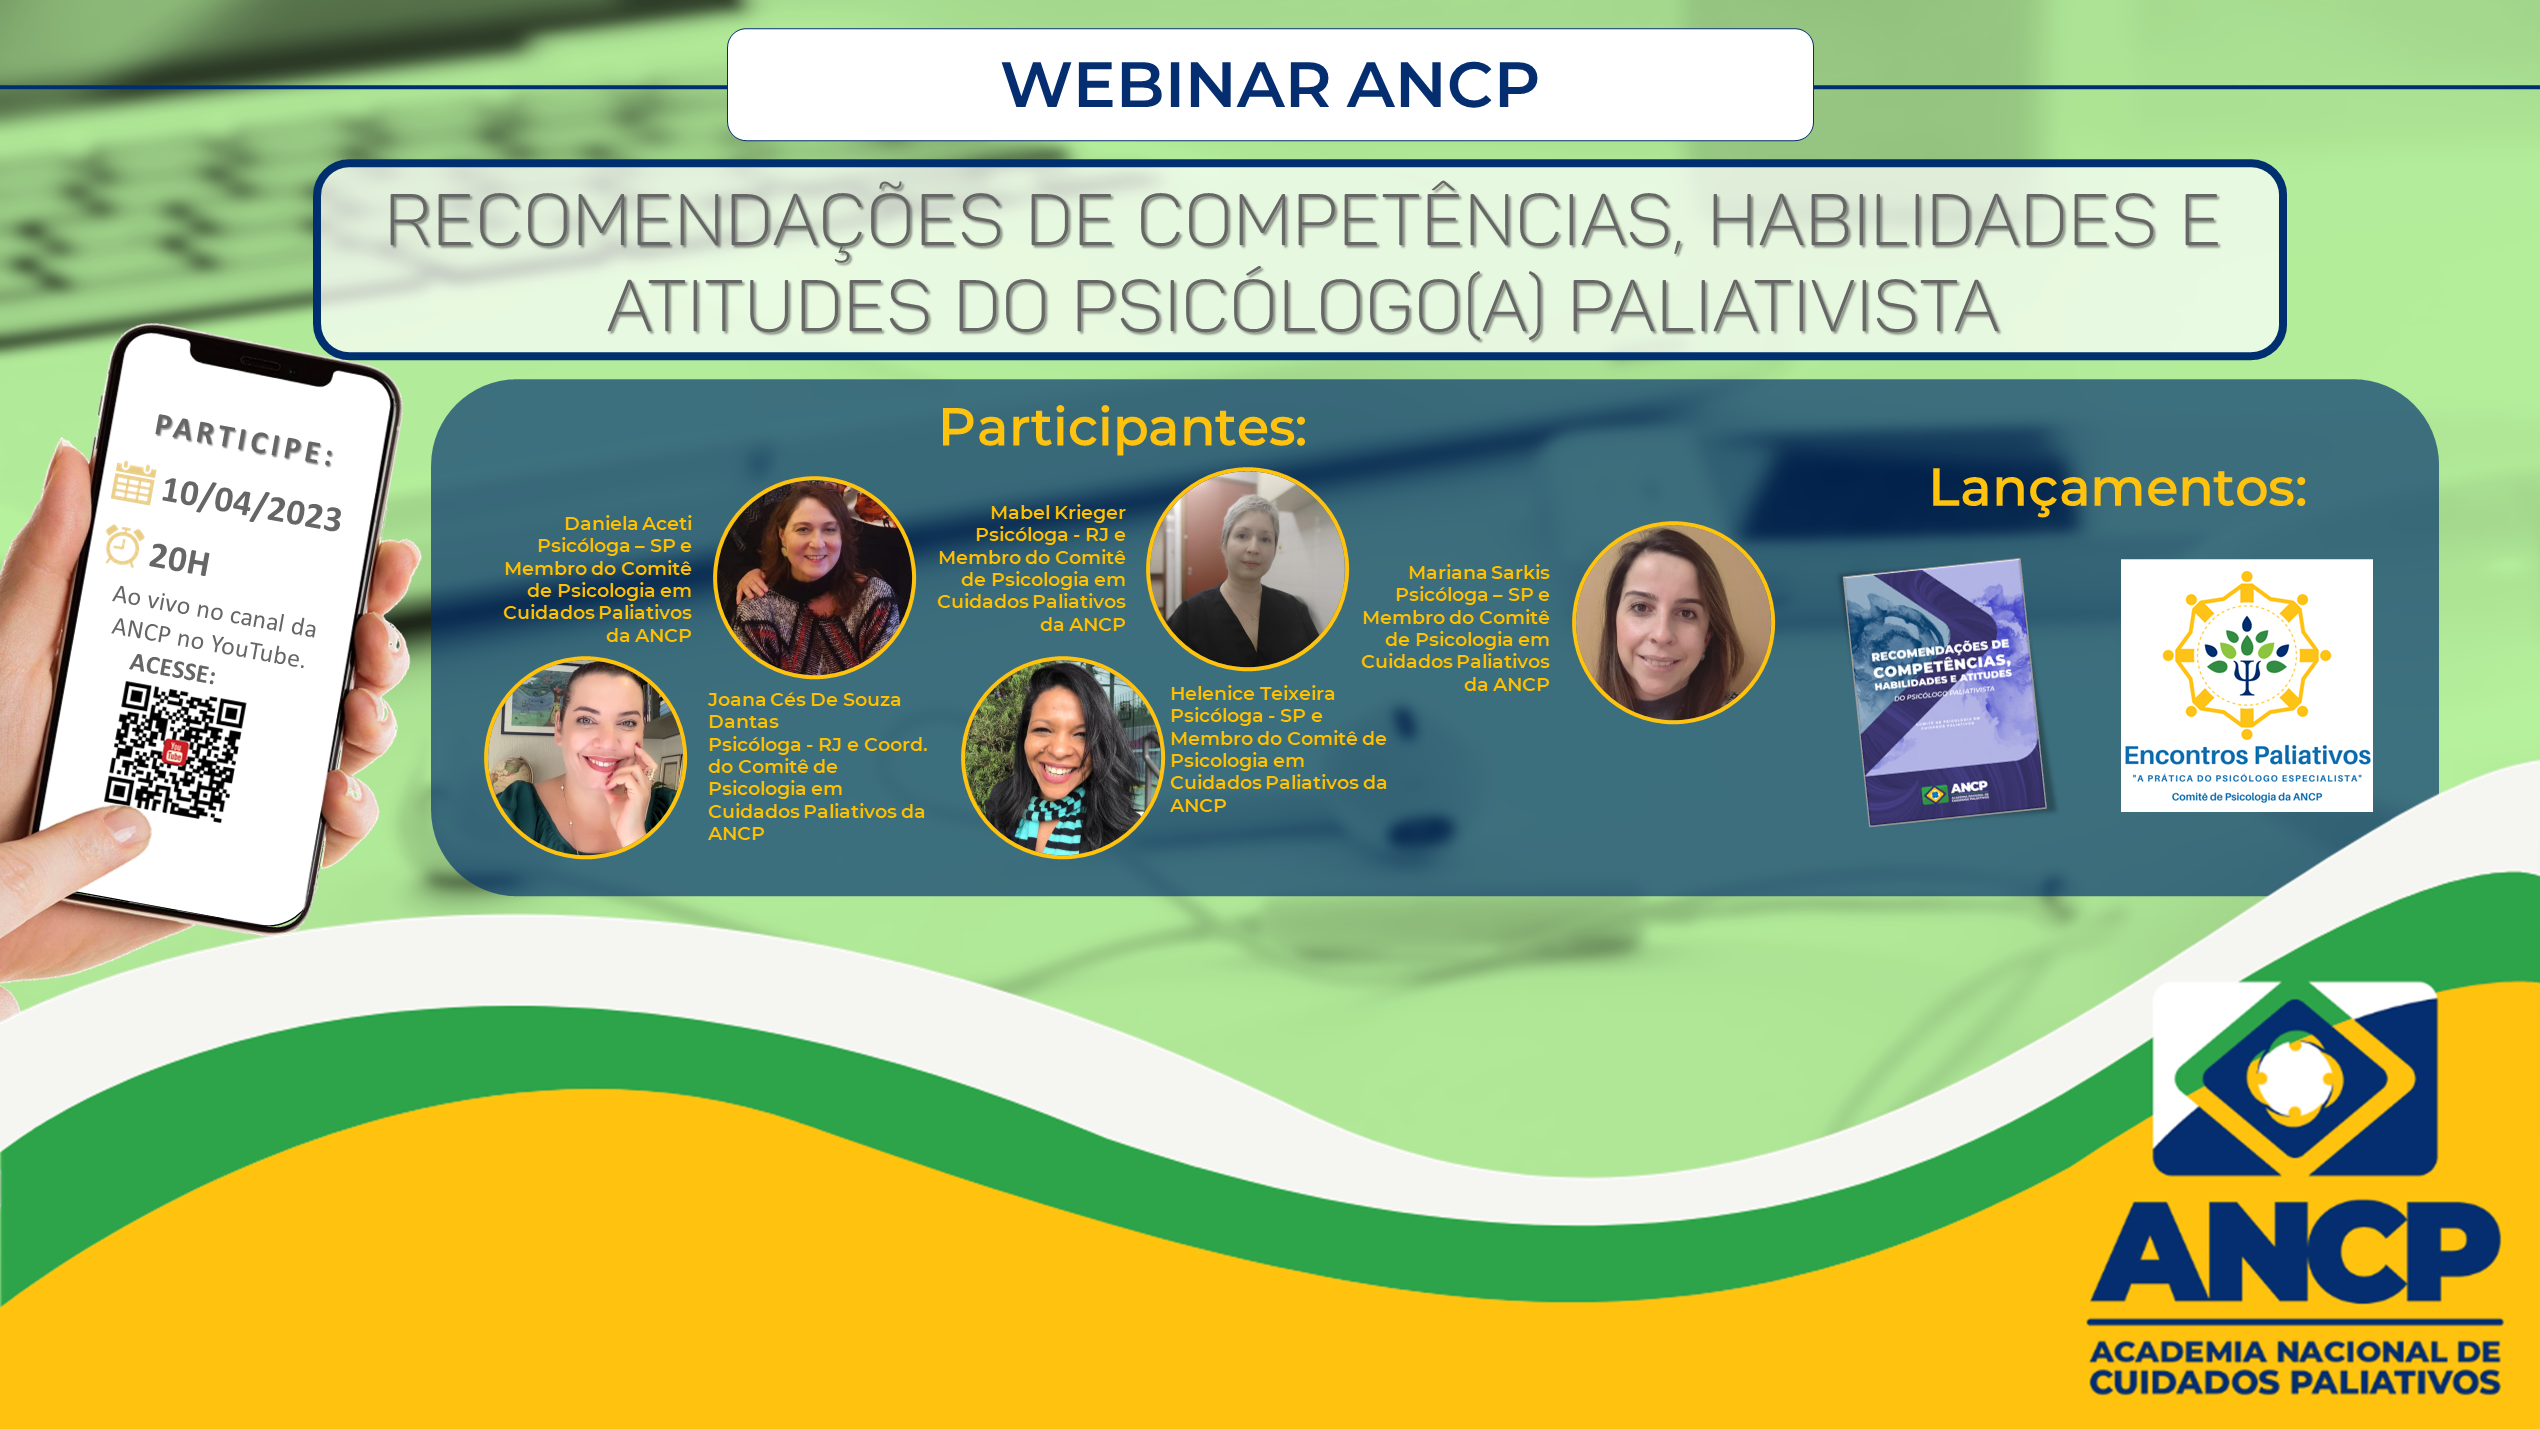 Webinar ANCP Recomendações de Competências, Habilidades e Atitudes do Psicólogo(a) Paliativista